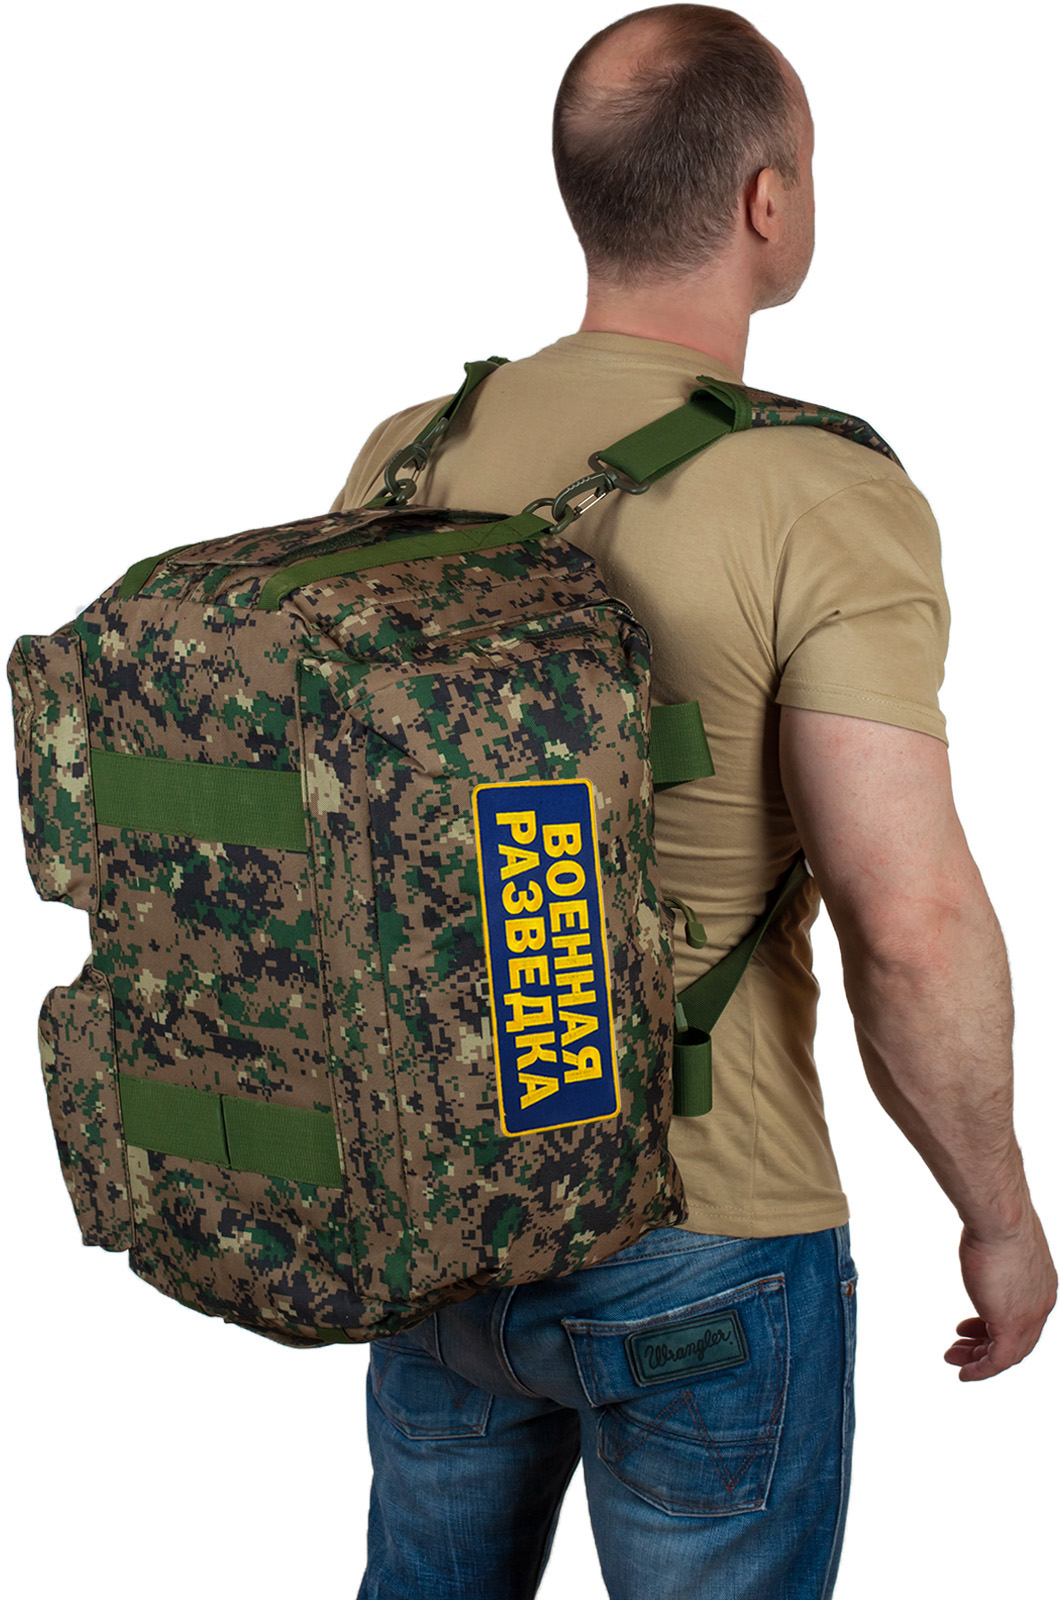 Заплечная сумка-баул Военная разведка 